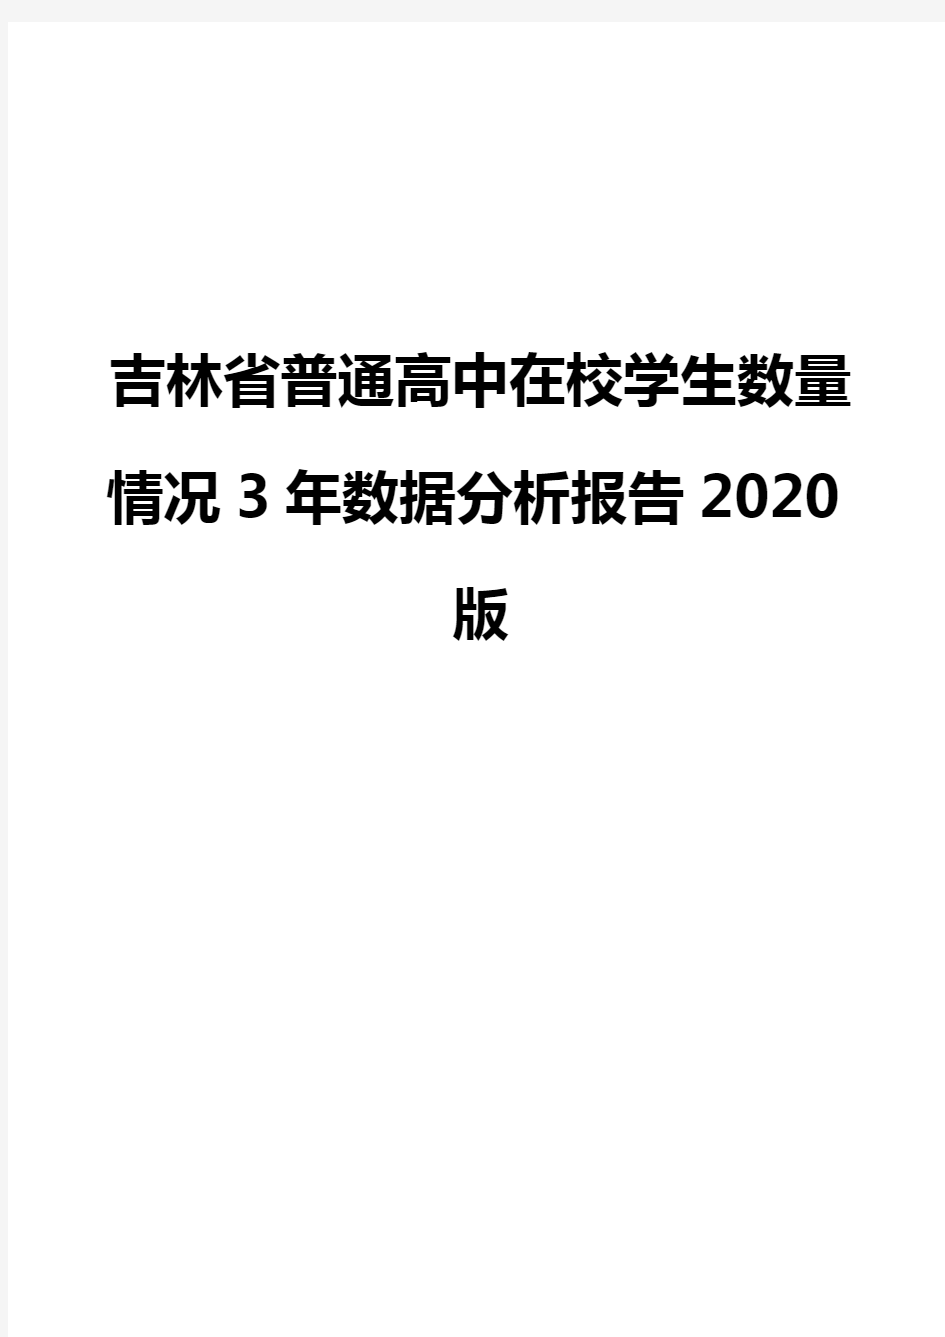 吉林省普通高中在校学生数量情况3年数据分析报告2020版